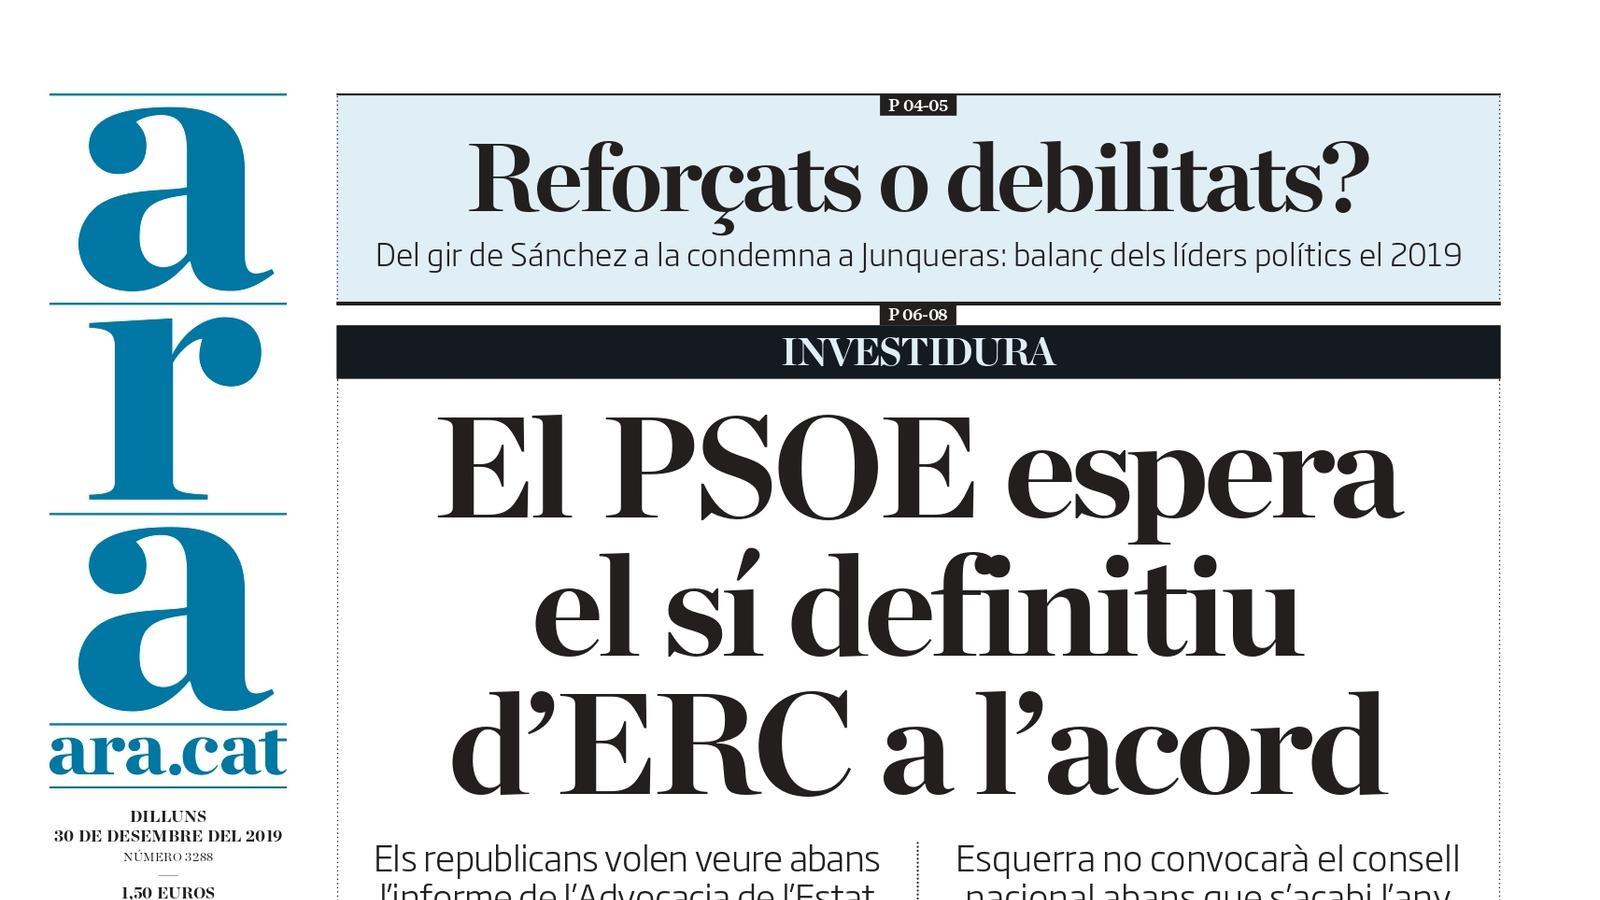 "El PSOE espera el sí definitiu d'ERC a l'acord", la portada de l'ARA